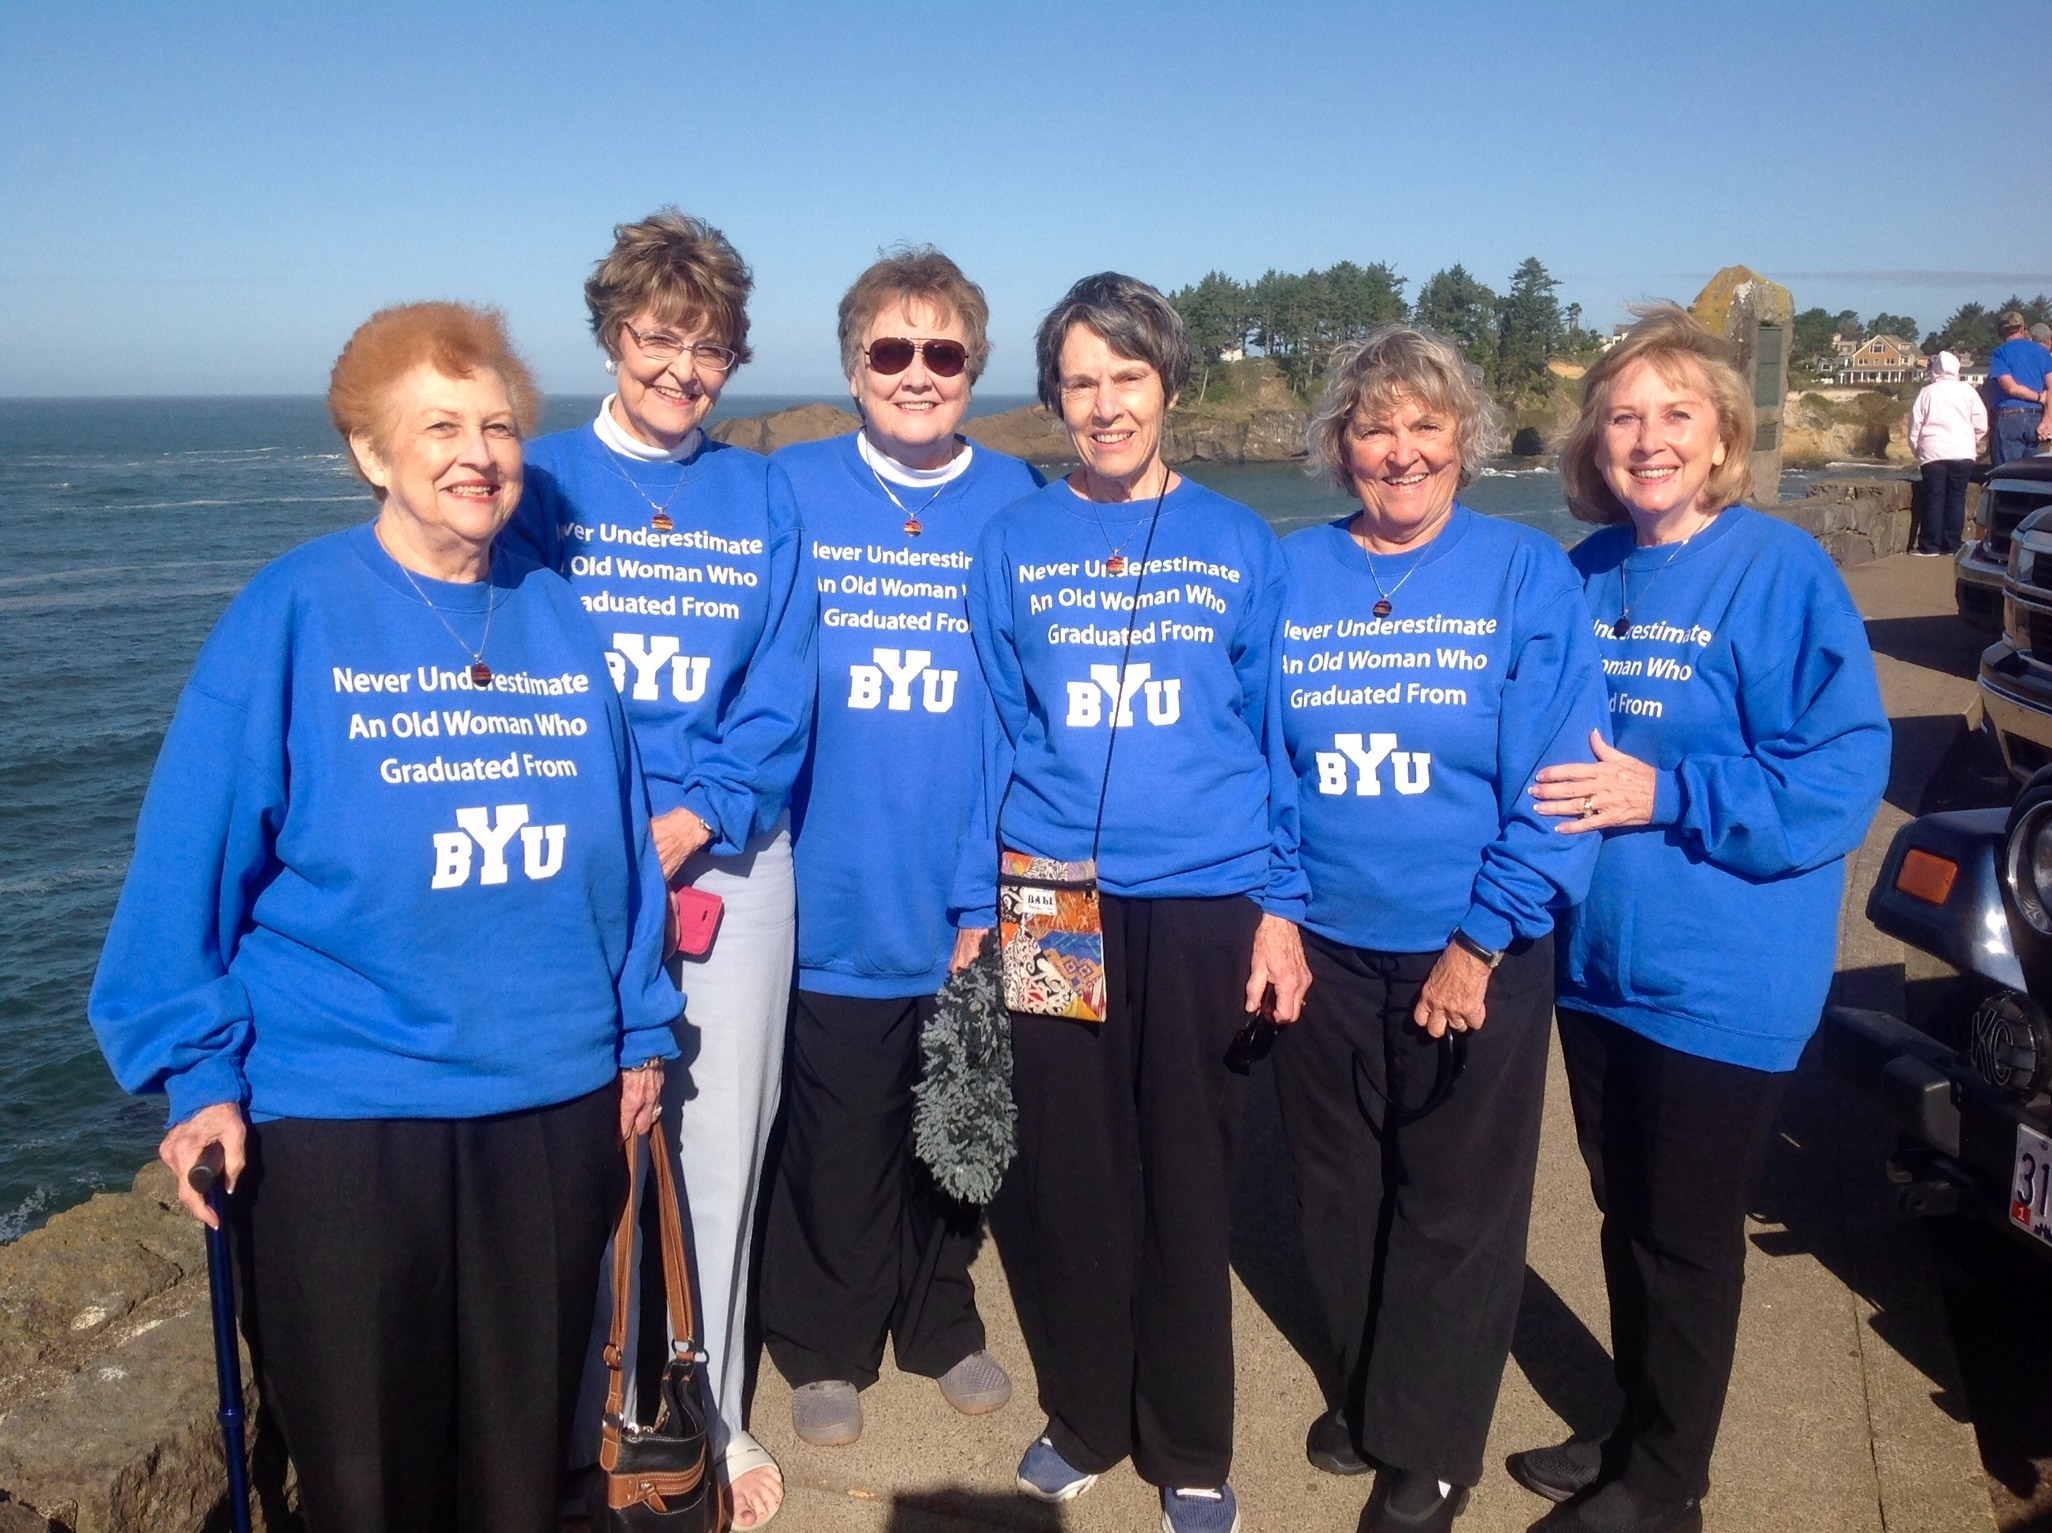 Kay Hansen, JoAnne Elmer, Betty Moody, Joan Davenport, Dorene Sheldon, and Sharon Senecal at Depoe Bay, Oregon on September 27, 2016.